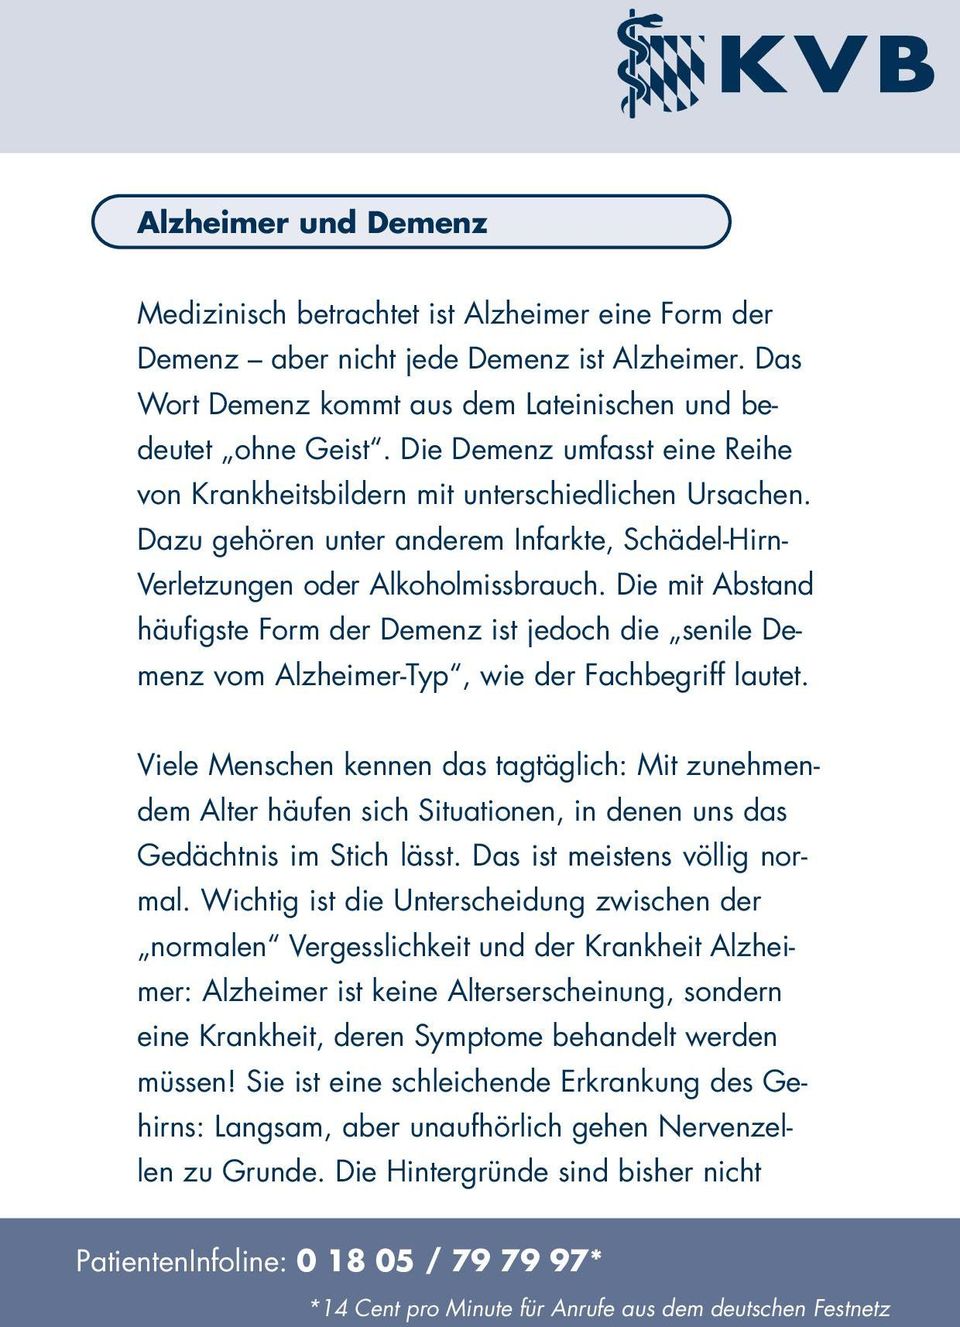 Die mit Abstand häufigste Form der Demenz ist jedoch die senile Demenz vom Alzheimer-Typ, wie der Fachbegriff lautet.